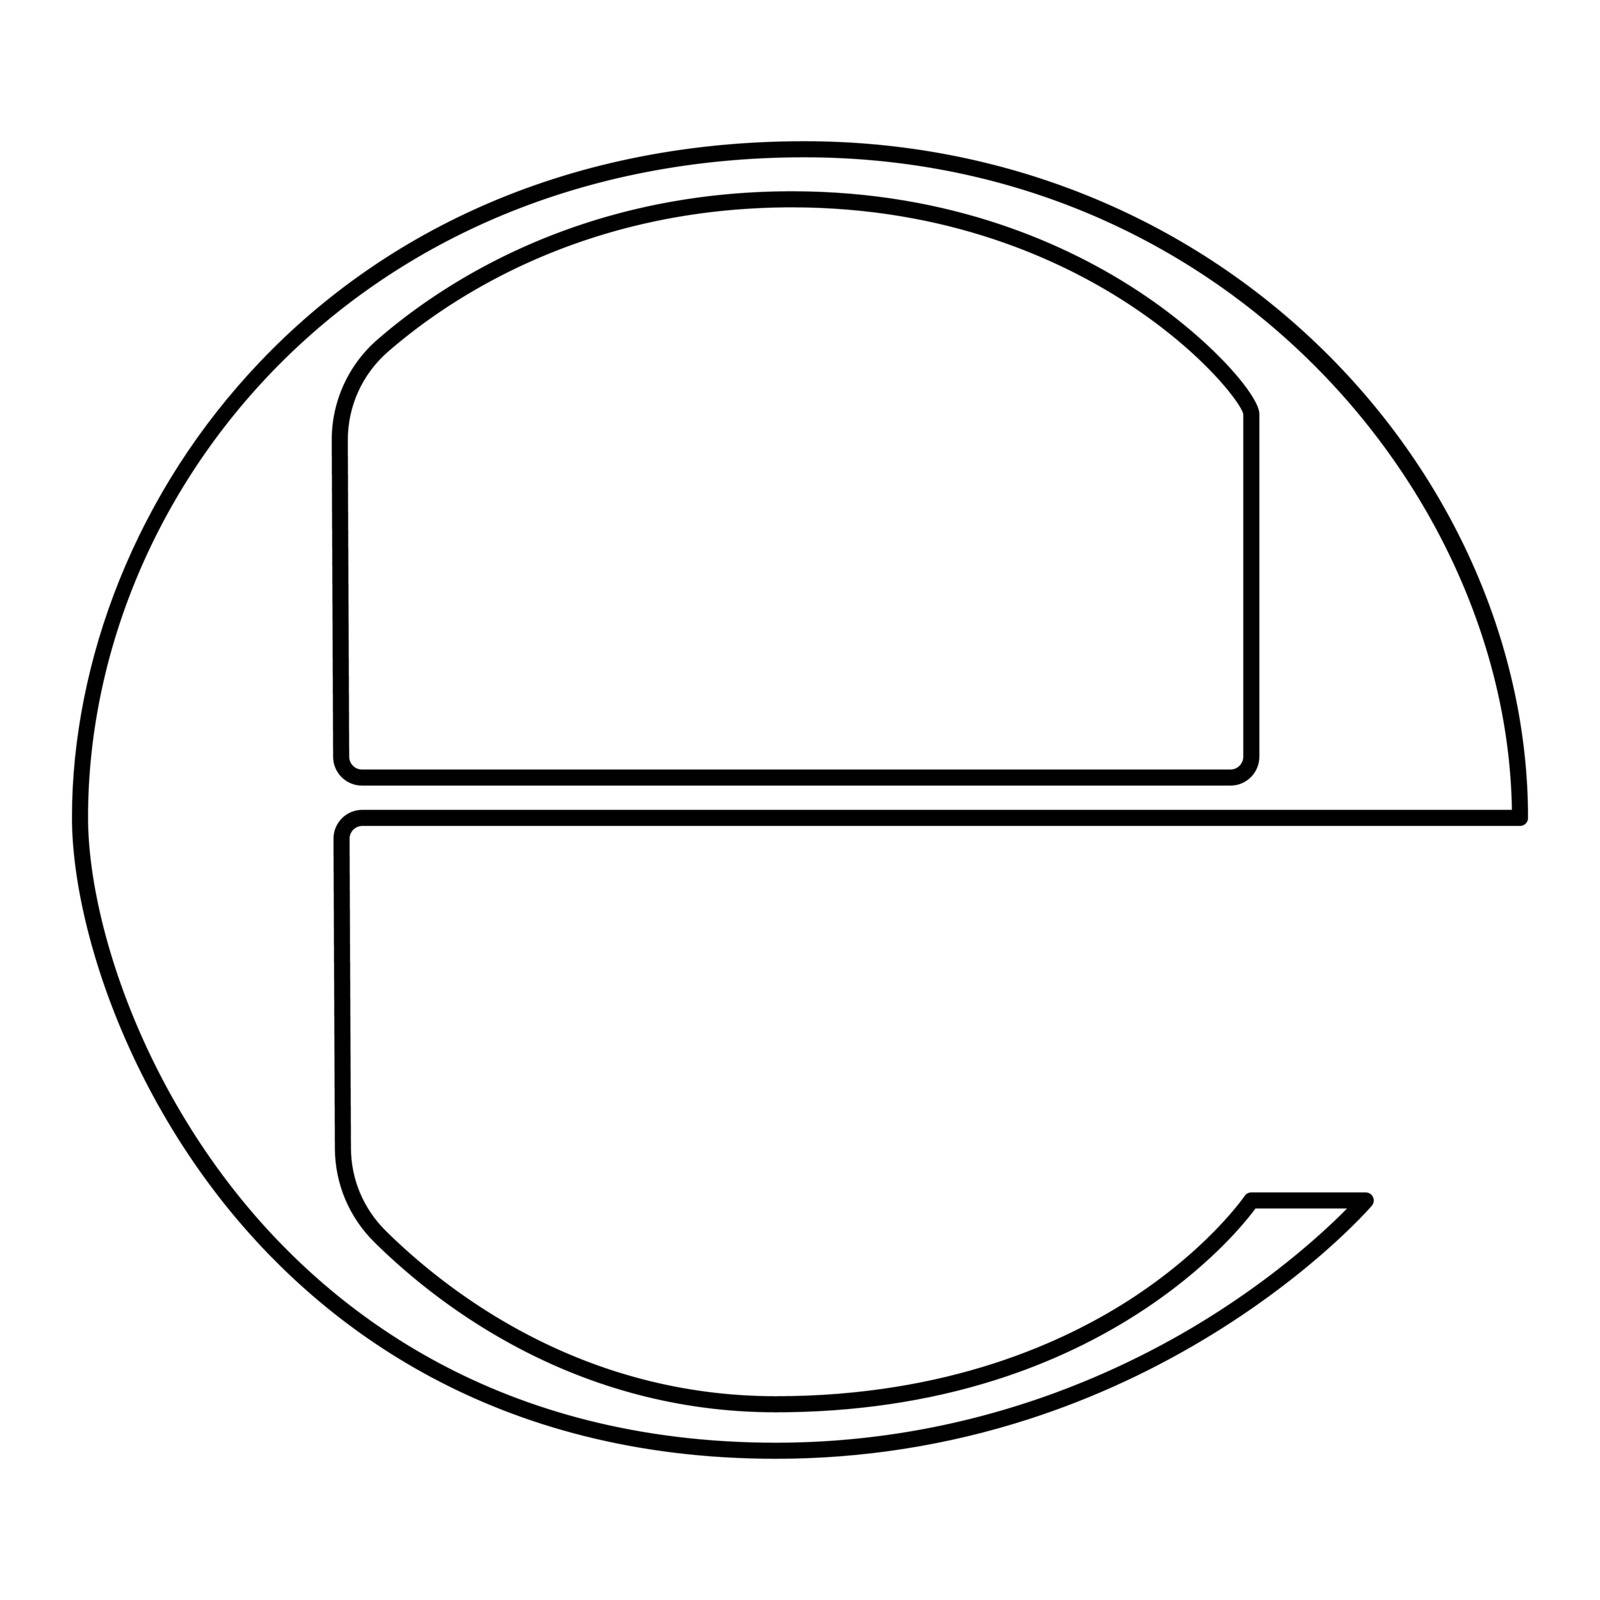 Estimated sign E mark symbol e icon black colour image